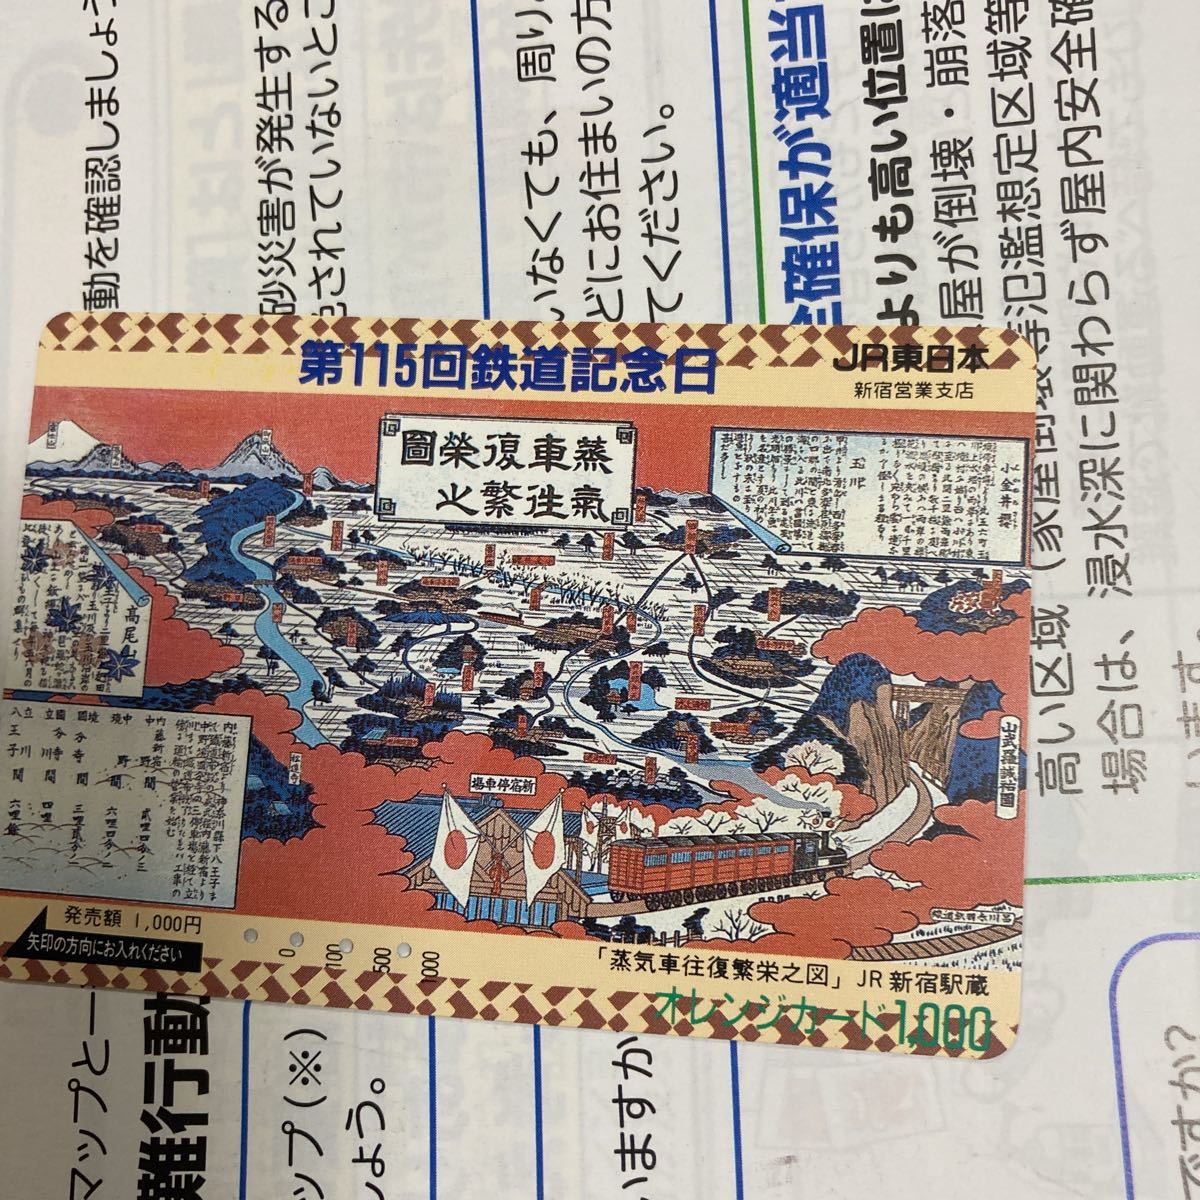 オレンジカードJR東日本新宿営業支店115回鉄道記念日_画像1